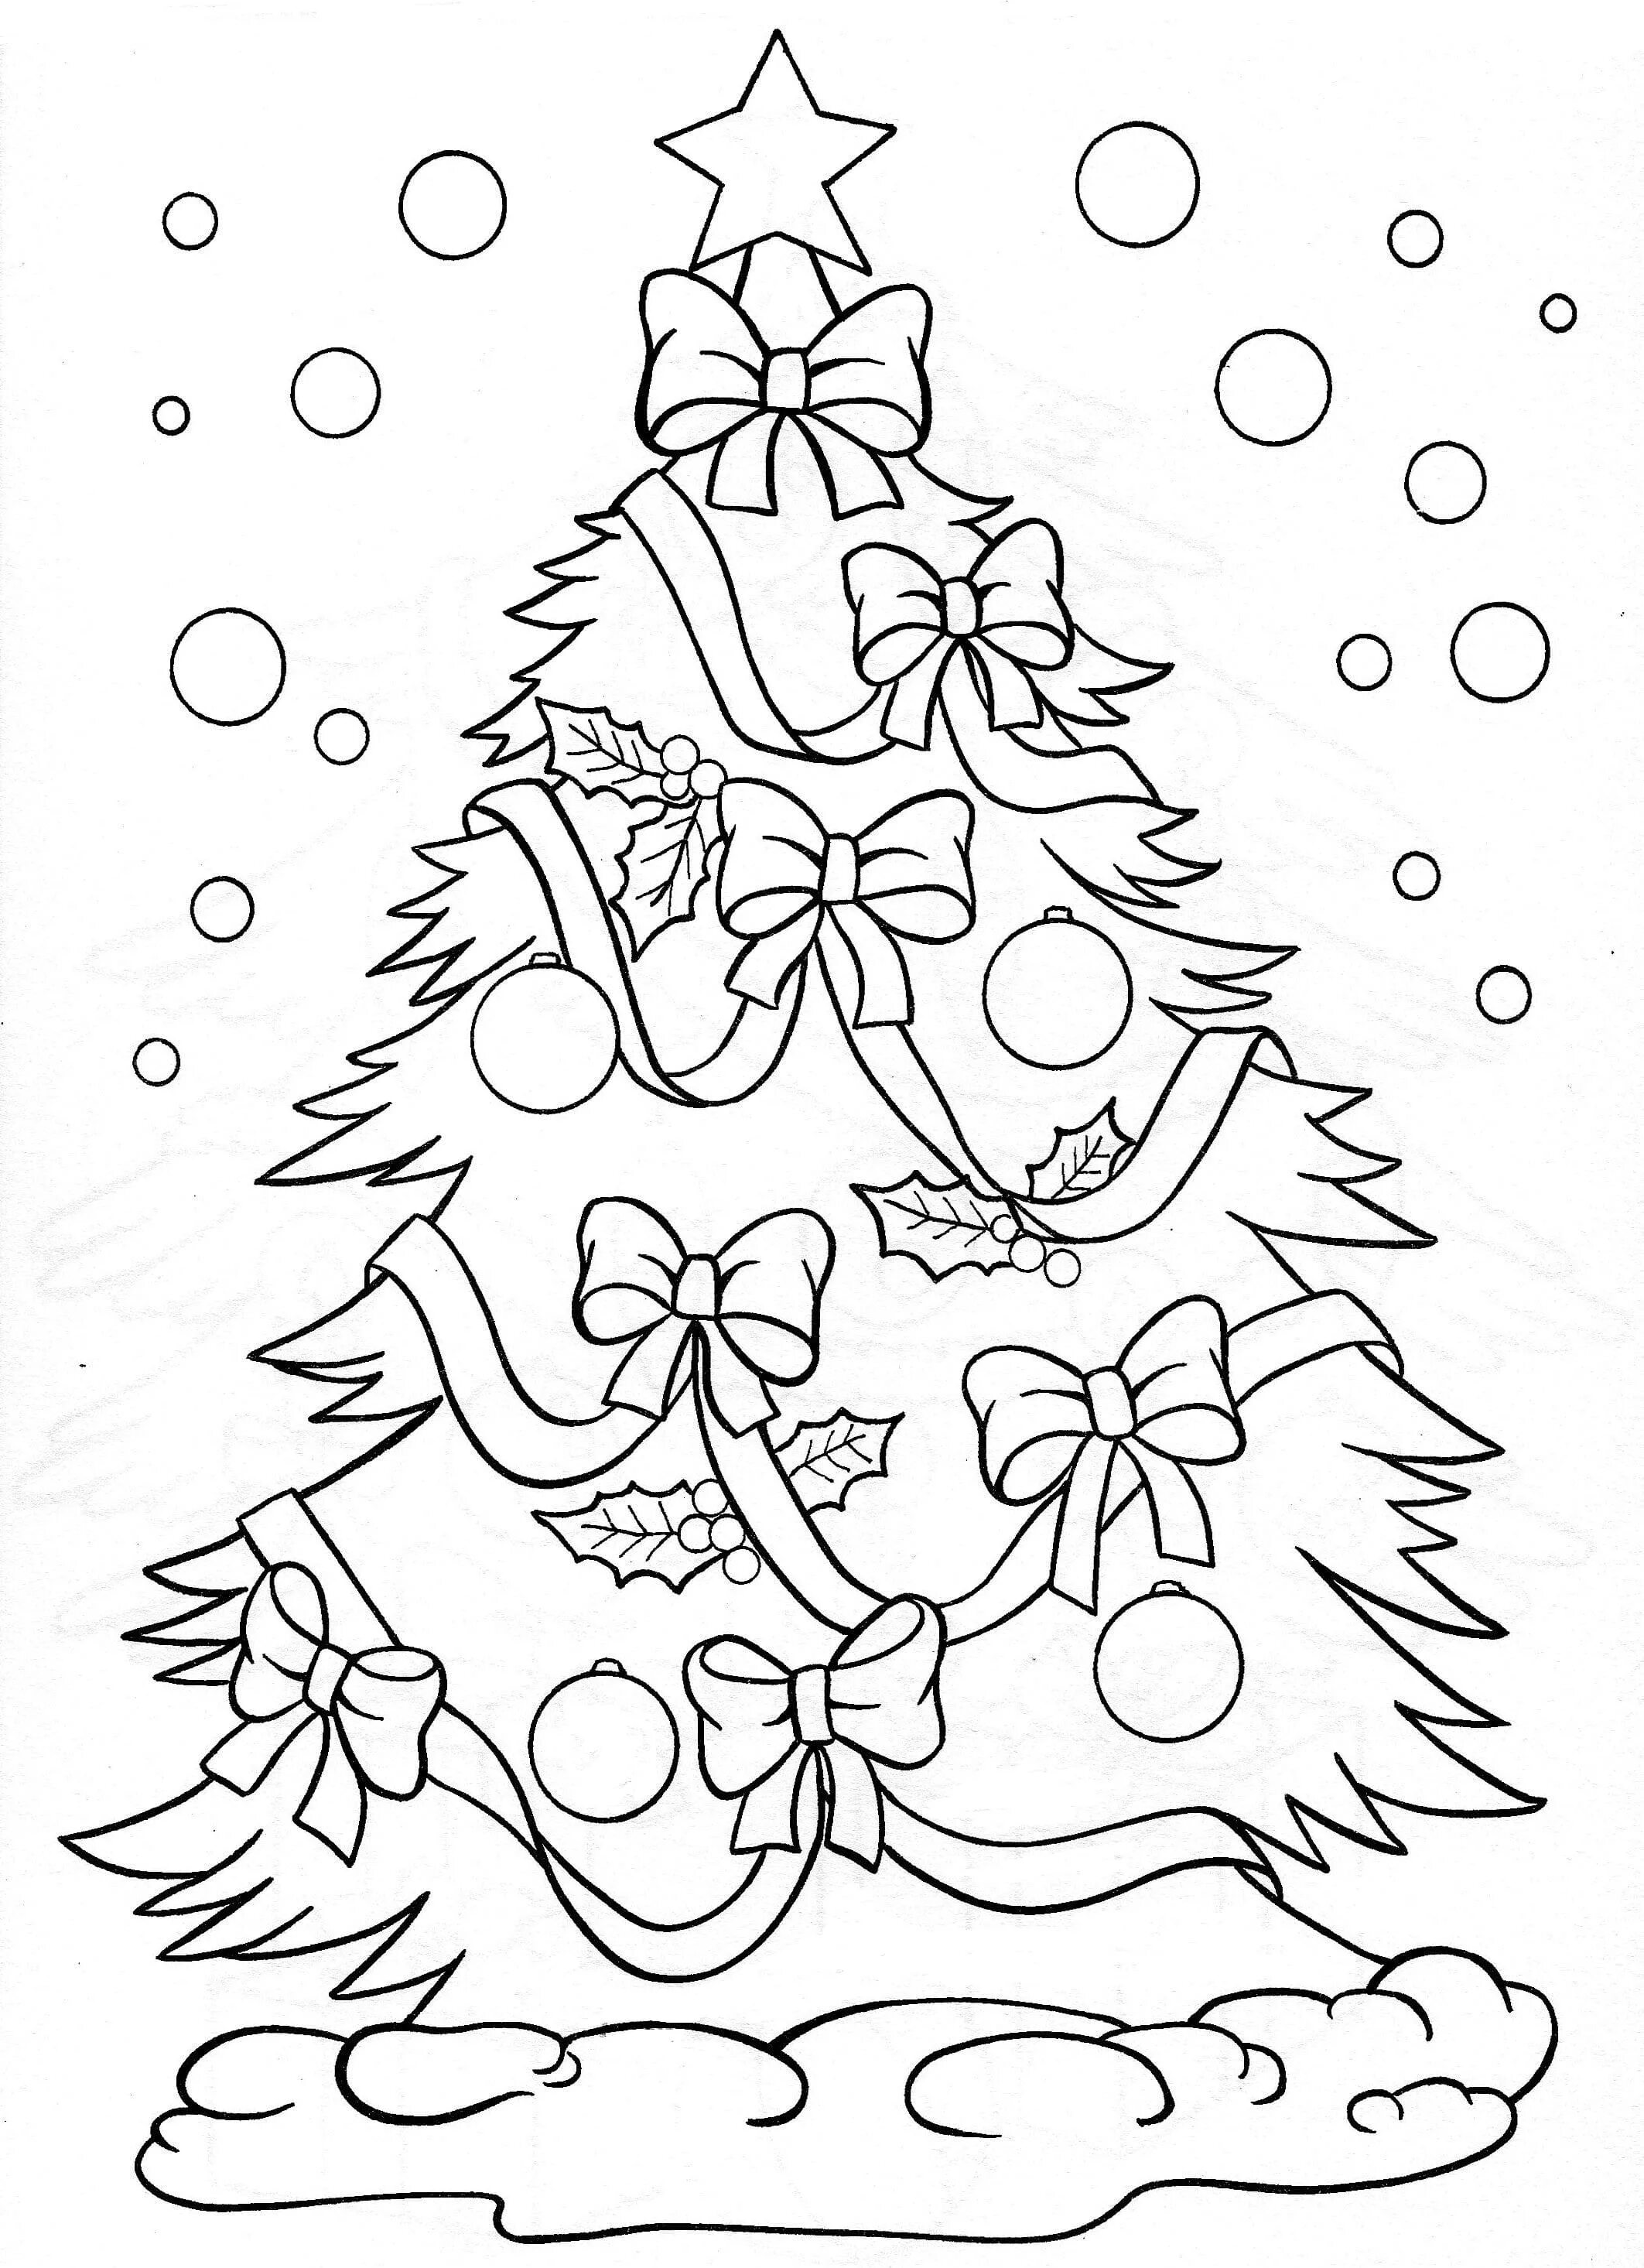 Раскраска ослепительной рождественской елки для детей 3-4 лет